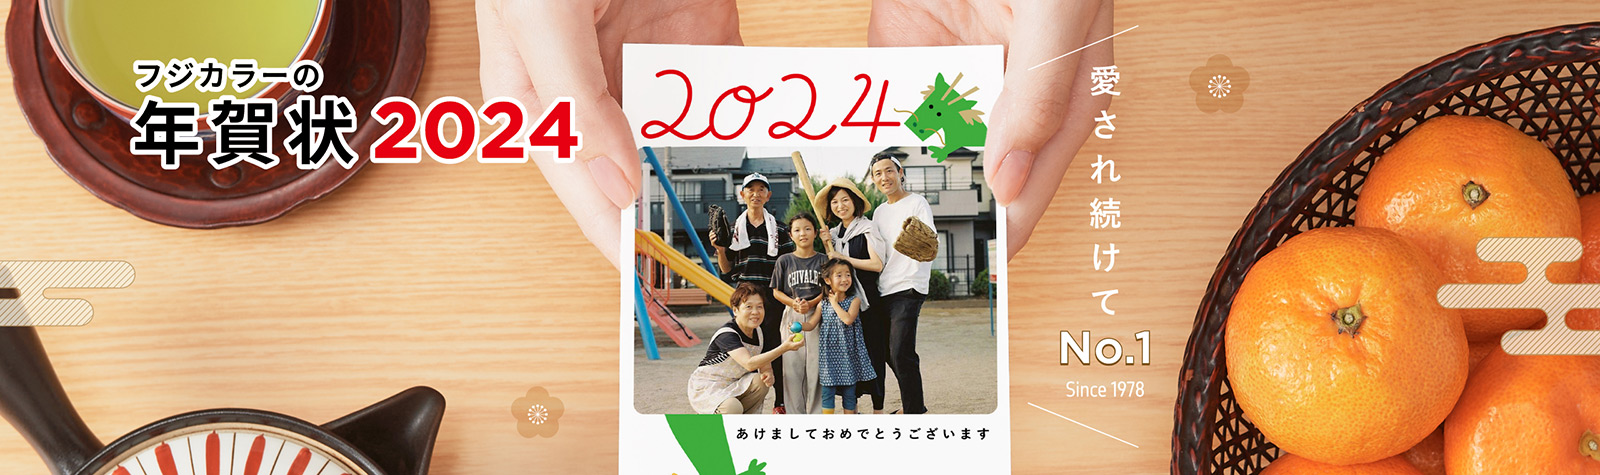 富士フイルムのフジカラー年賀状印刷 2024 愛され続けてNo.1 (Since 1978)